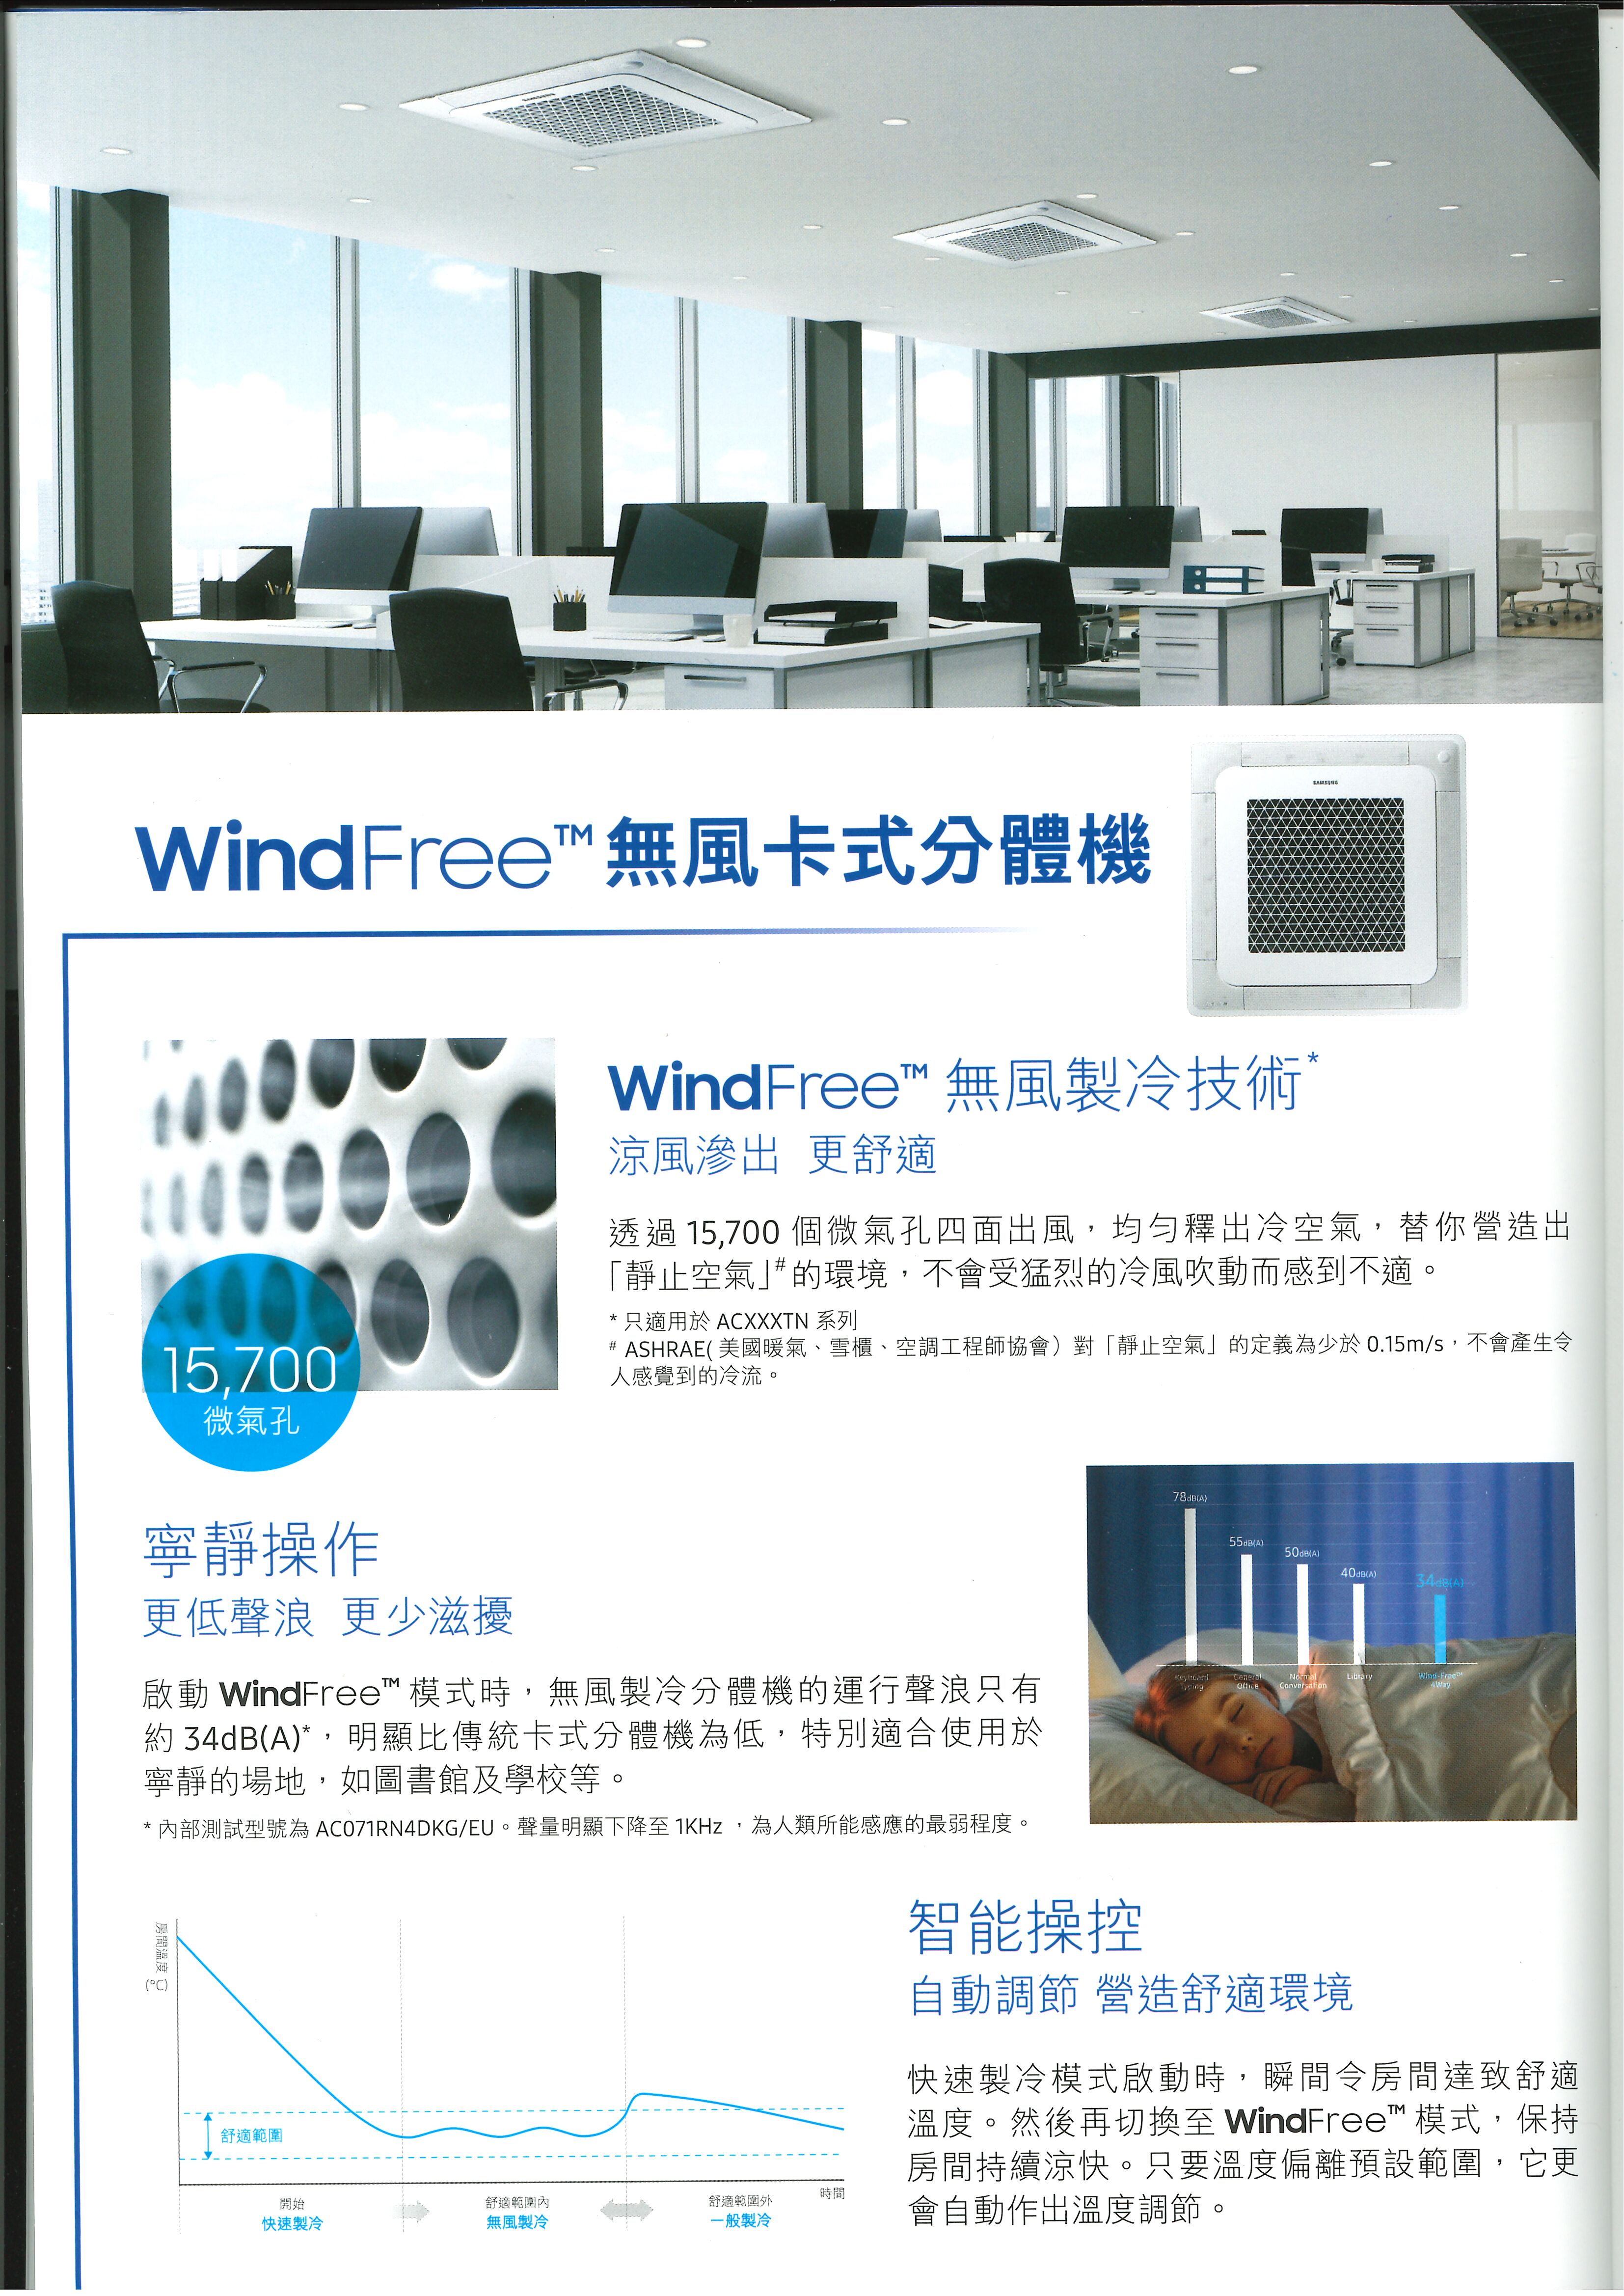 Samsung 三星 AC100TN4DKC/EA 4.0匹 WindFree 無風製冷技術 藏天花式冷氣機